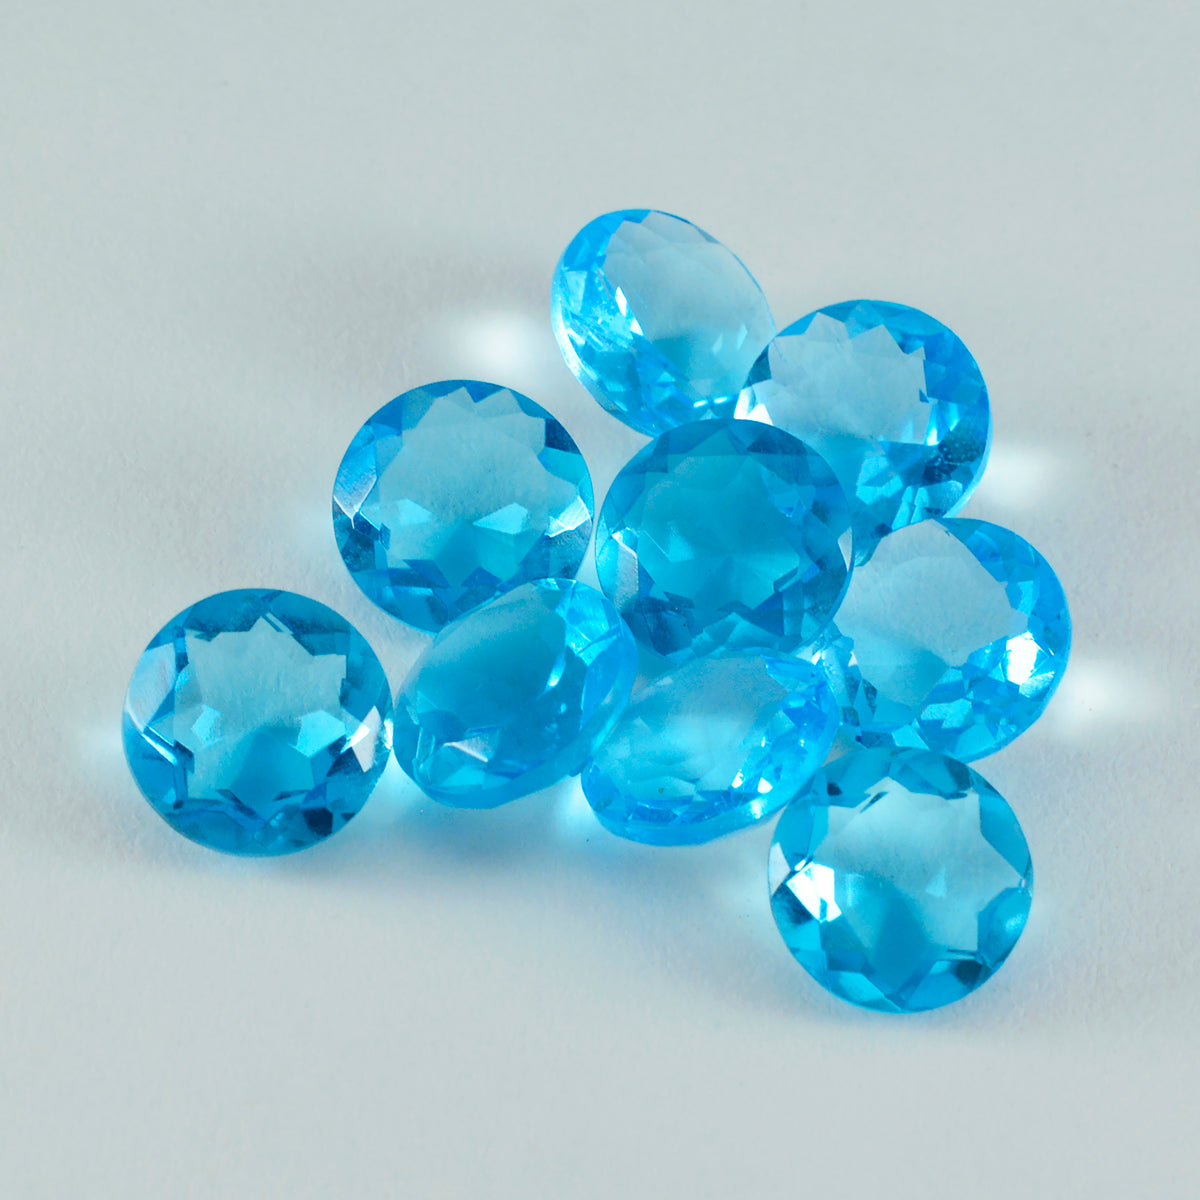 riyogems 1pc ブルー トパーズ CZ ファセット 12x12 mm ラウンド形状 a+ 品質宝石